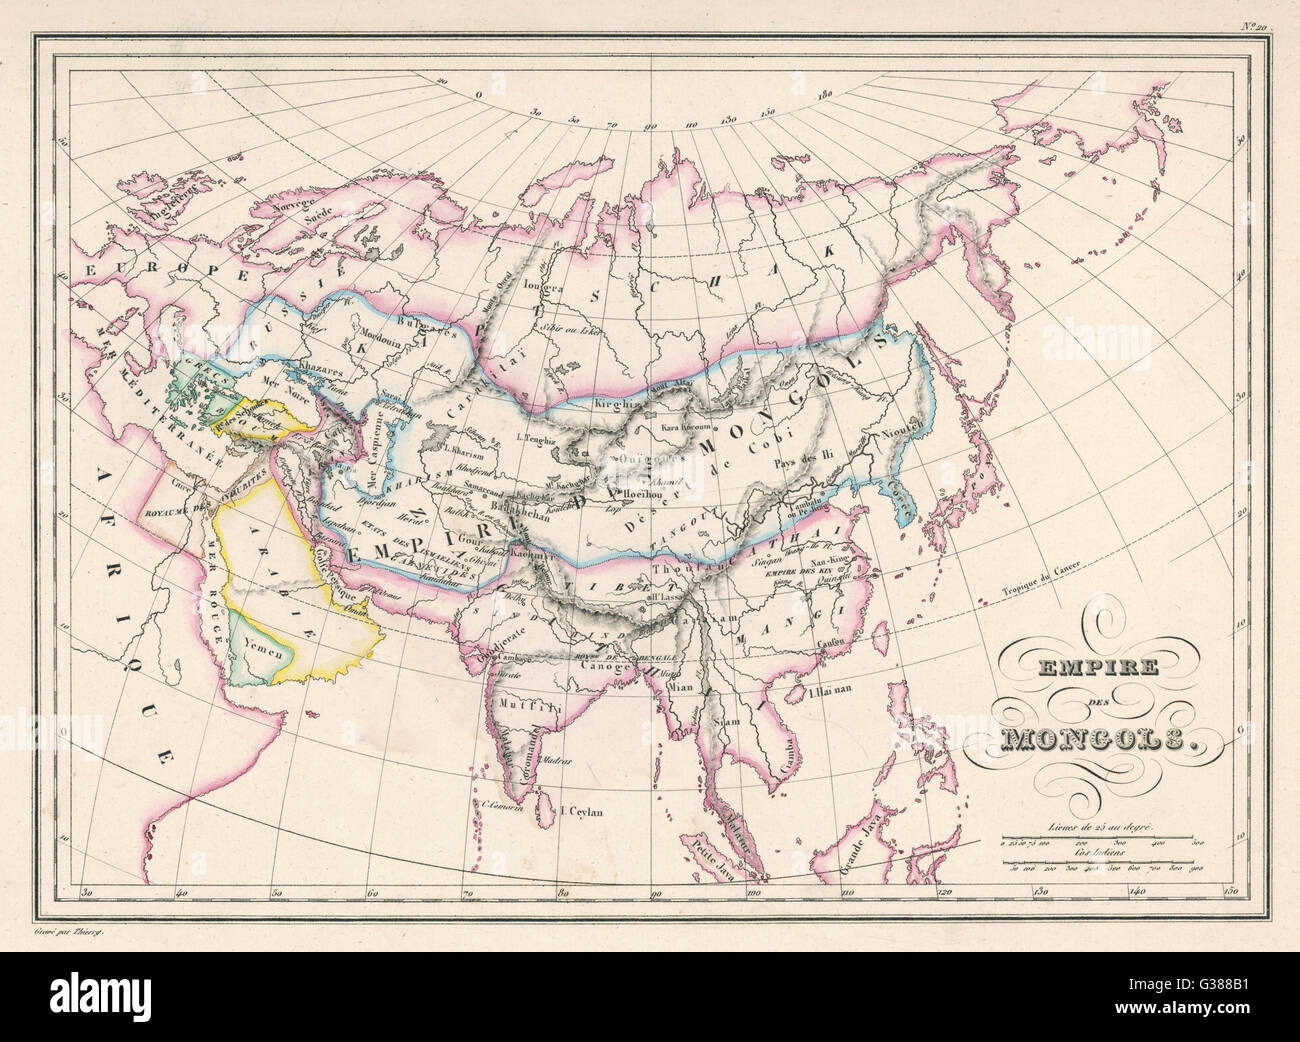 Das mongolische Reich an seine größte Ausdehnung: von Dschingis Khan im 13. Jahrhundert begann, wurde es von Kublai Khan aber zerbrach nach etwa 1380 Datum erweitert: ca. 1300 Stockfoto